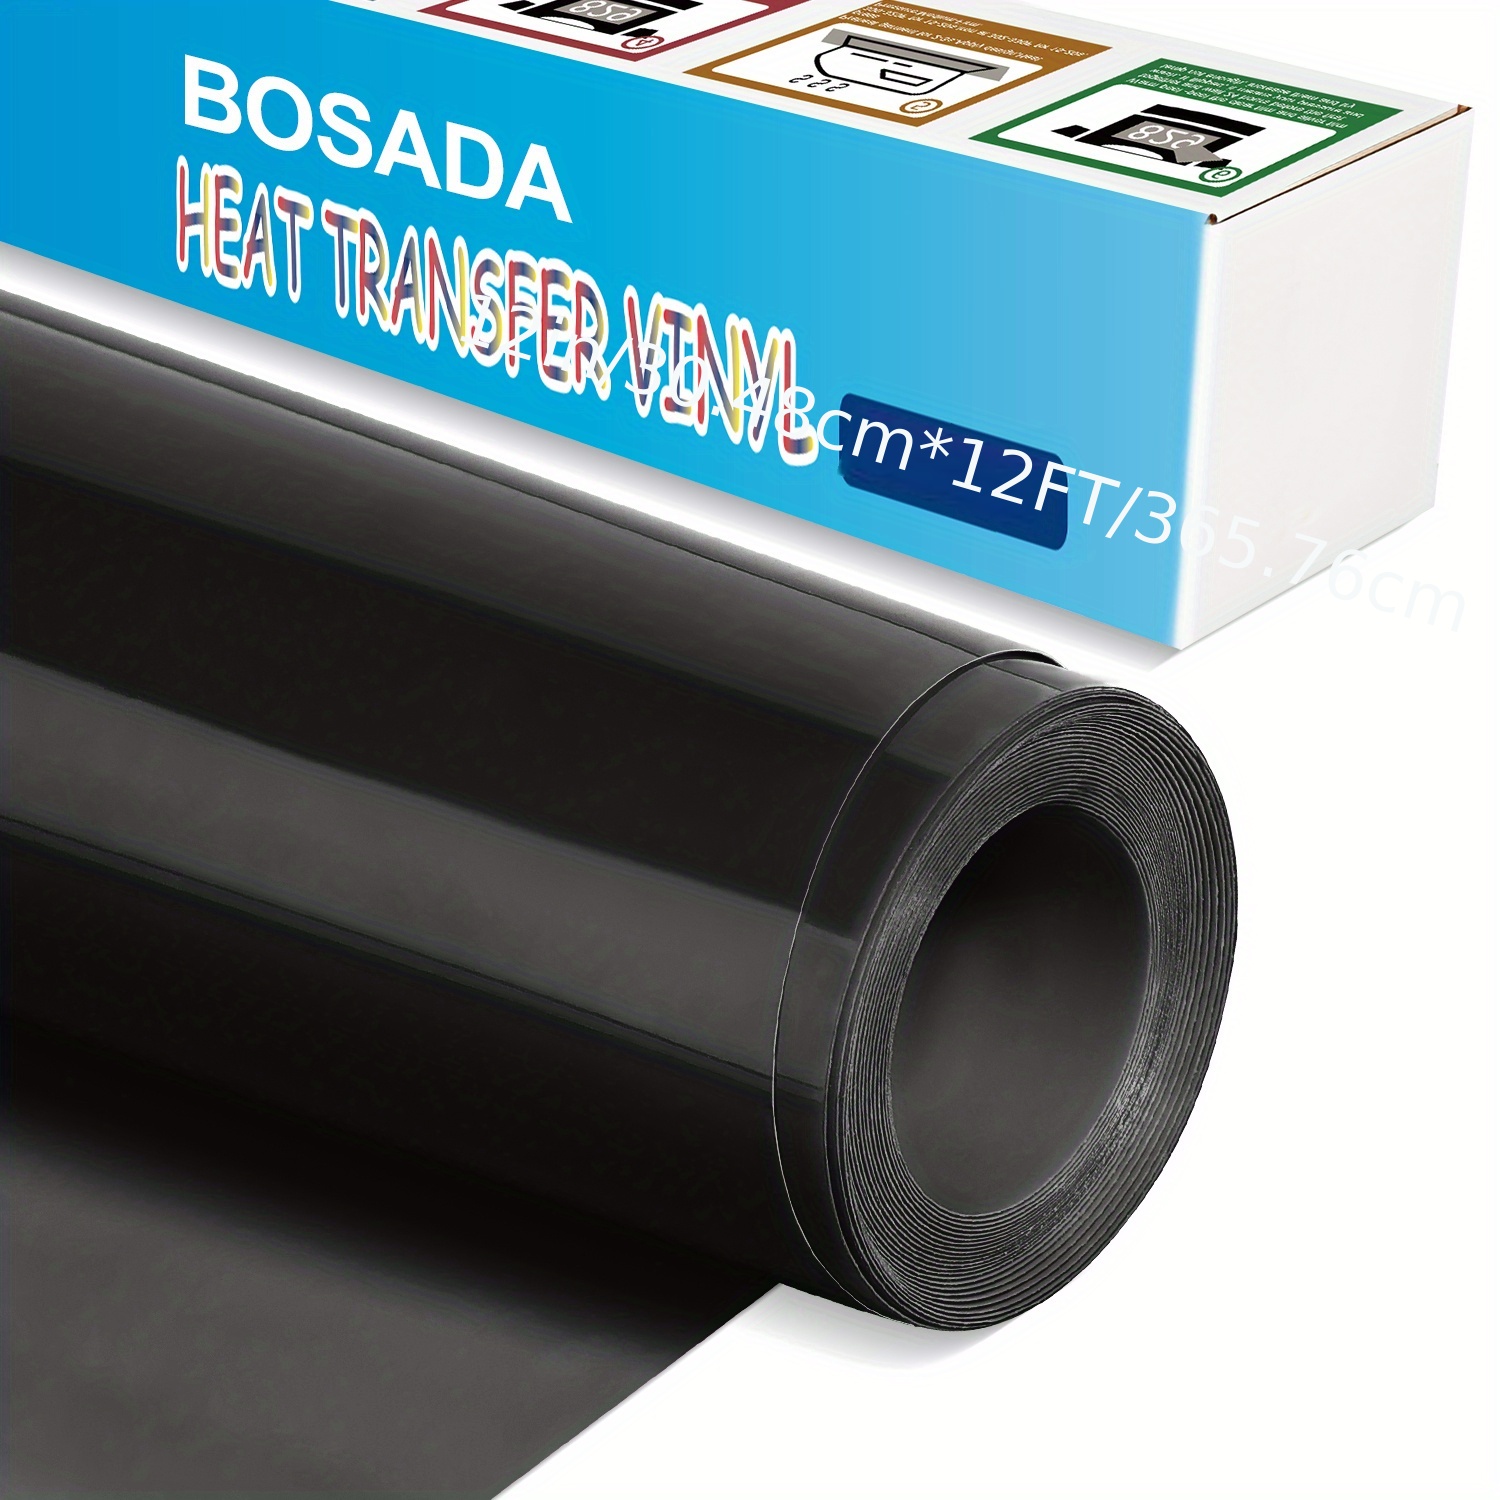 Black Heat Transfer Vinyl Rolls By Craftables